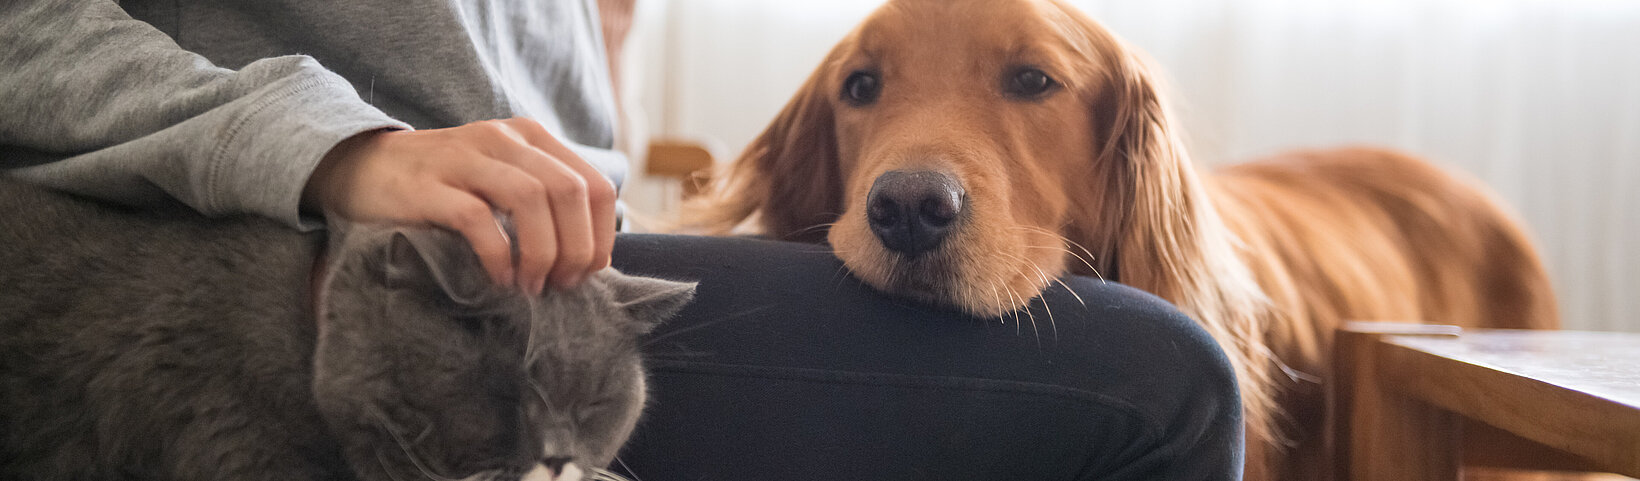 Frau auf dem Sofa mit Katze und Hund 